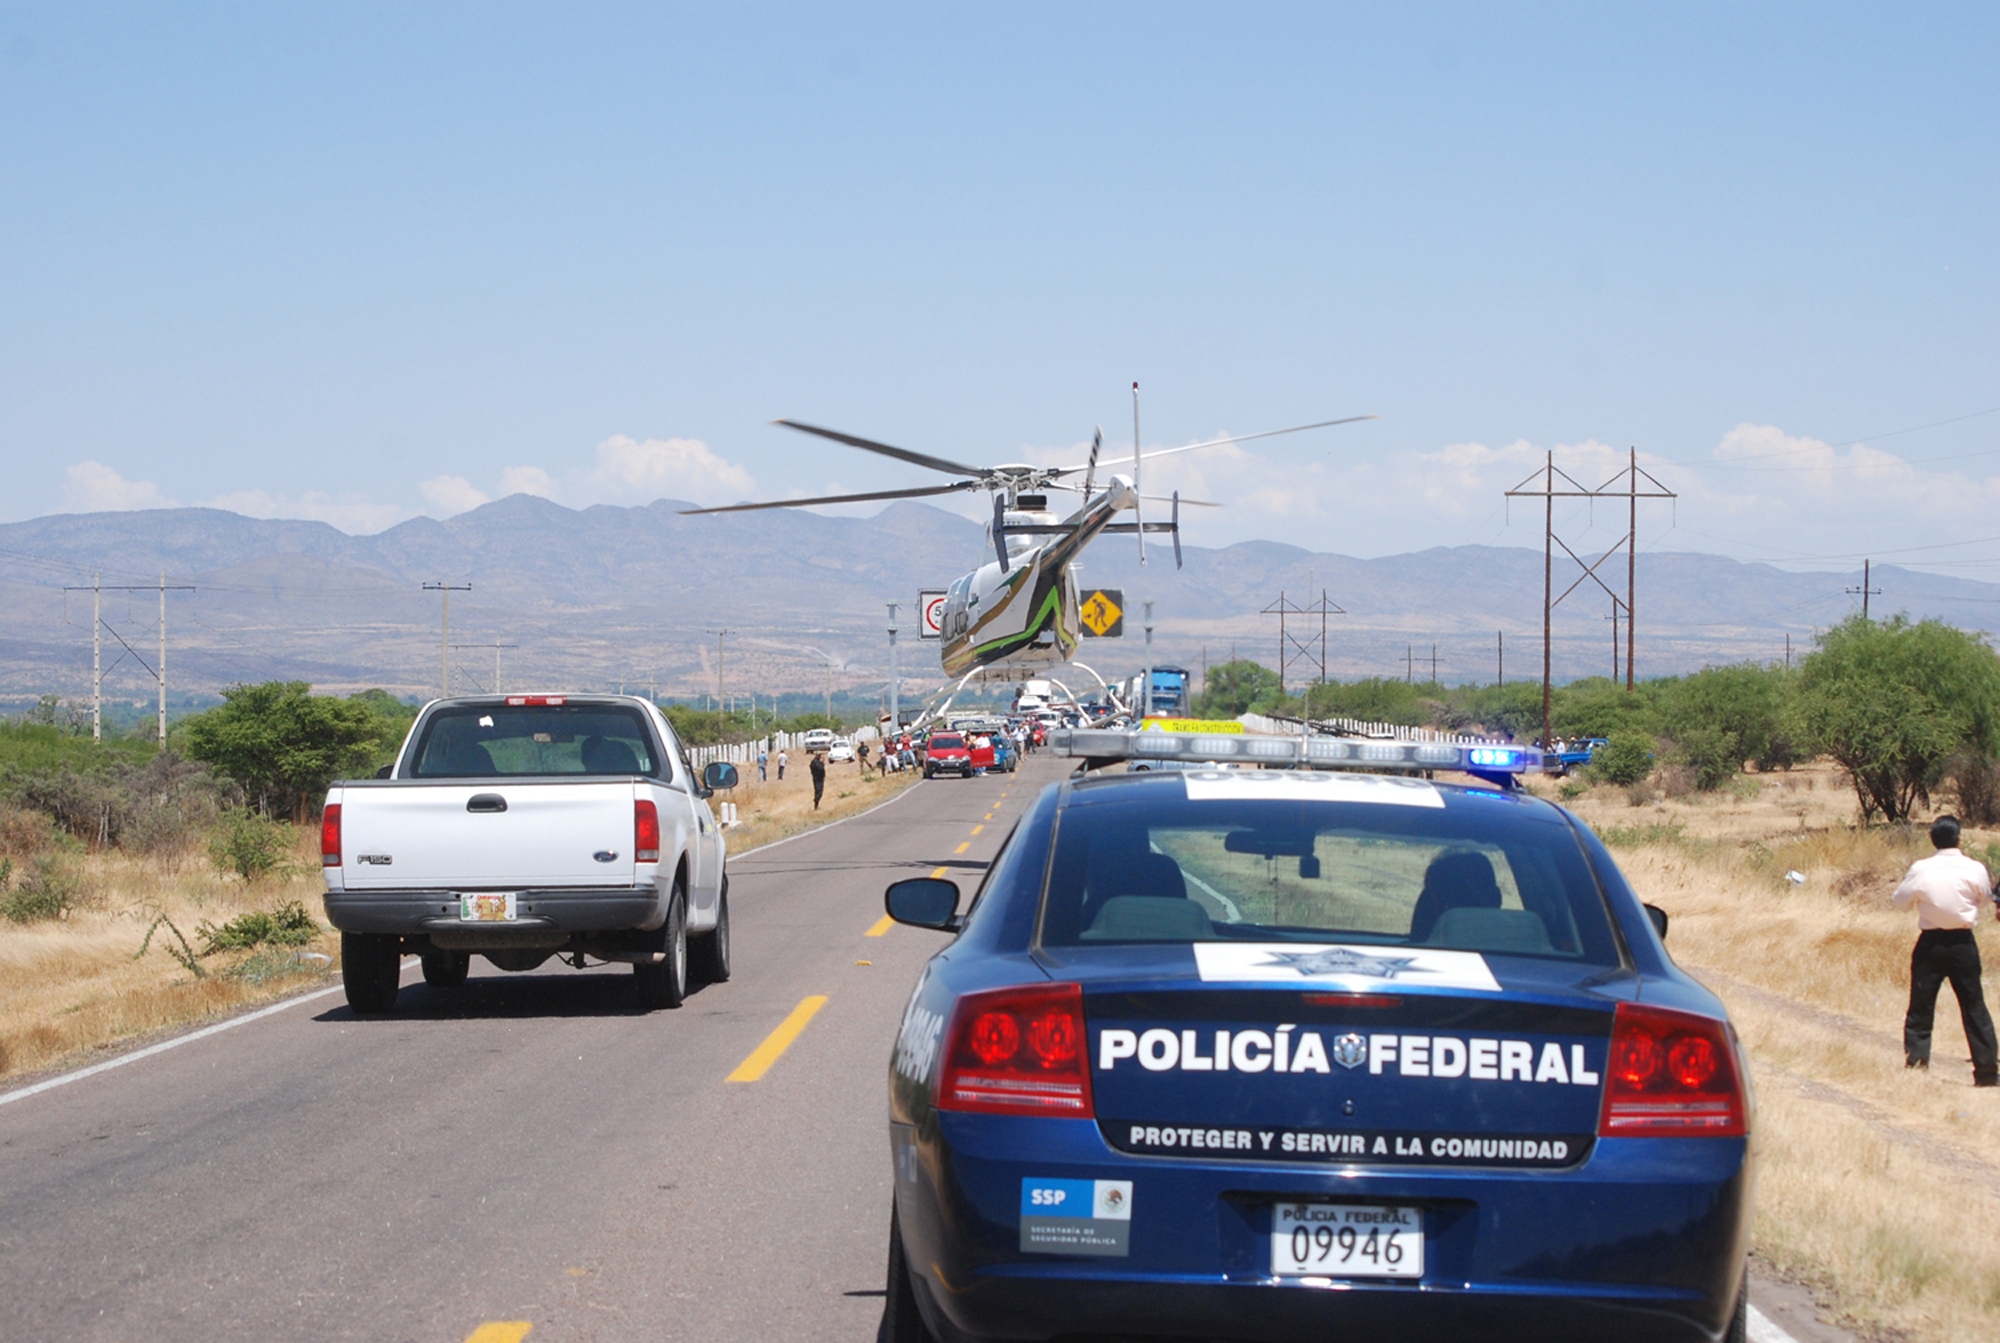 Den mexikanska polisen hittade kropparna i två bilar parkerade på motorvägen. Varning för starka bilder i bildspelet.